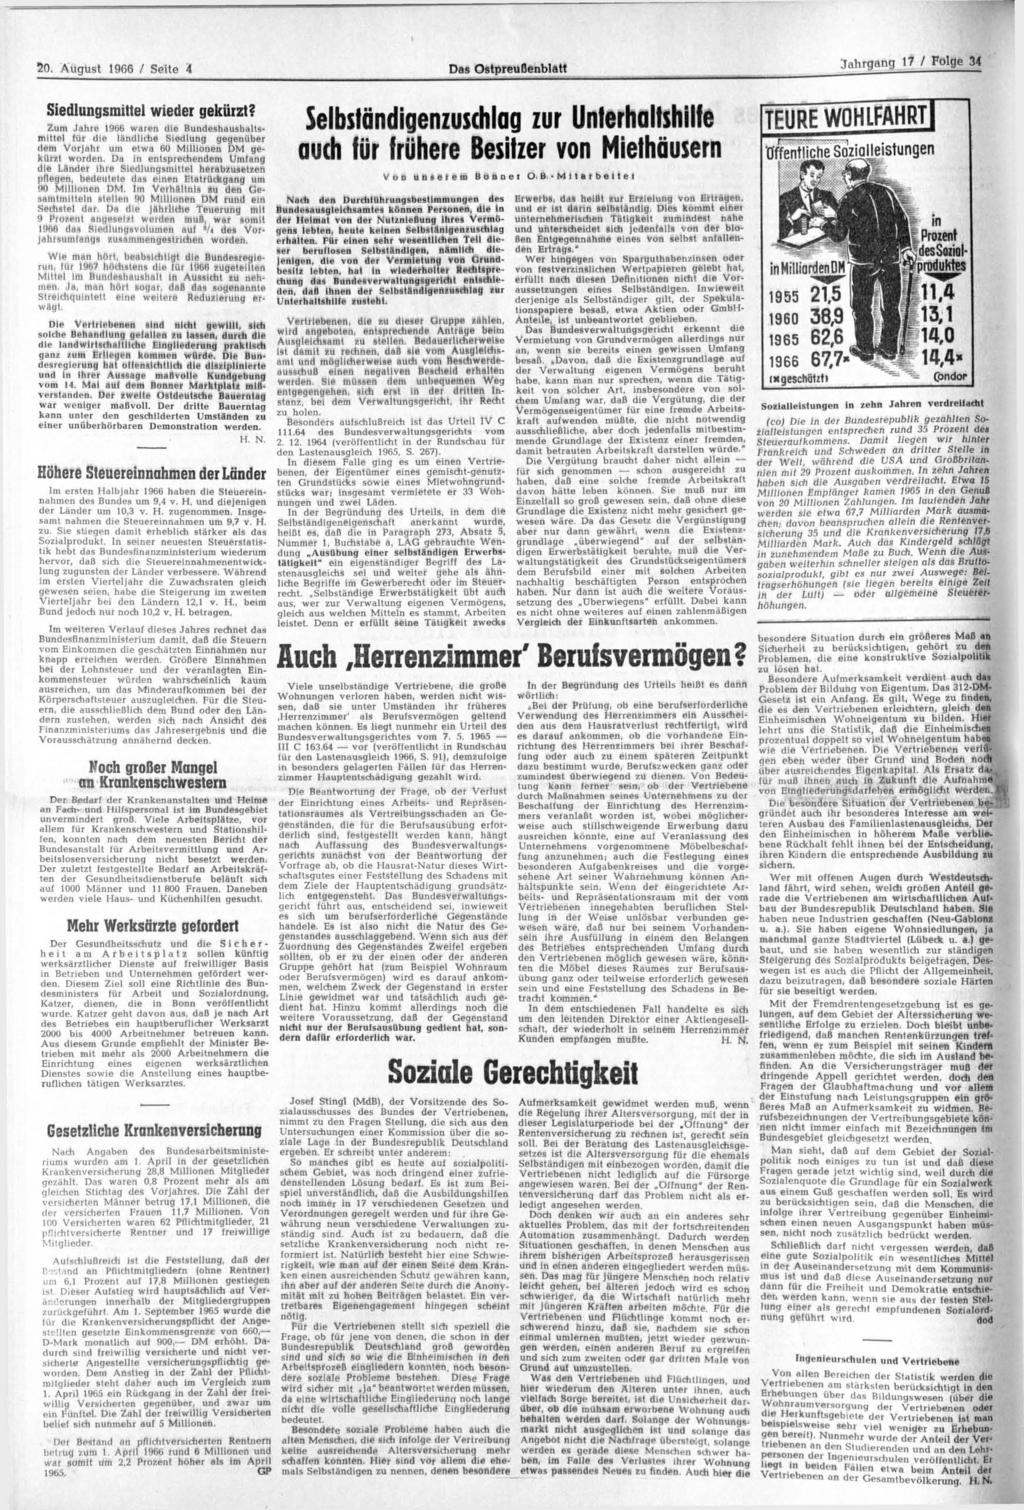 20. August 1966 / Seite 4 Das Ostpreußenblatt Jahrgang 17 / Folge 34 Siedlungsmittel wieder gekürzt?